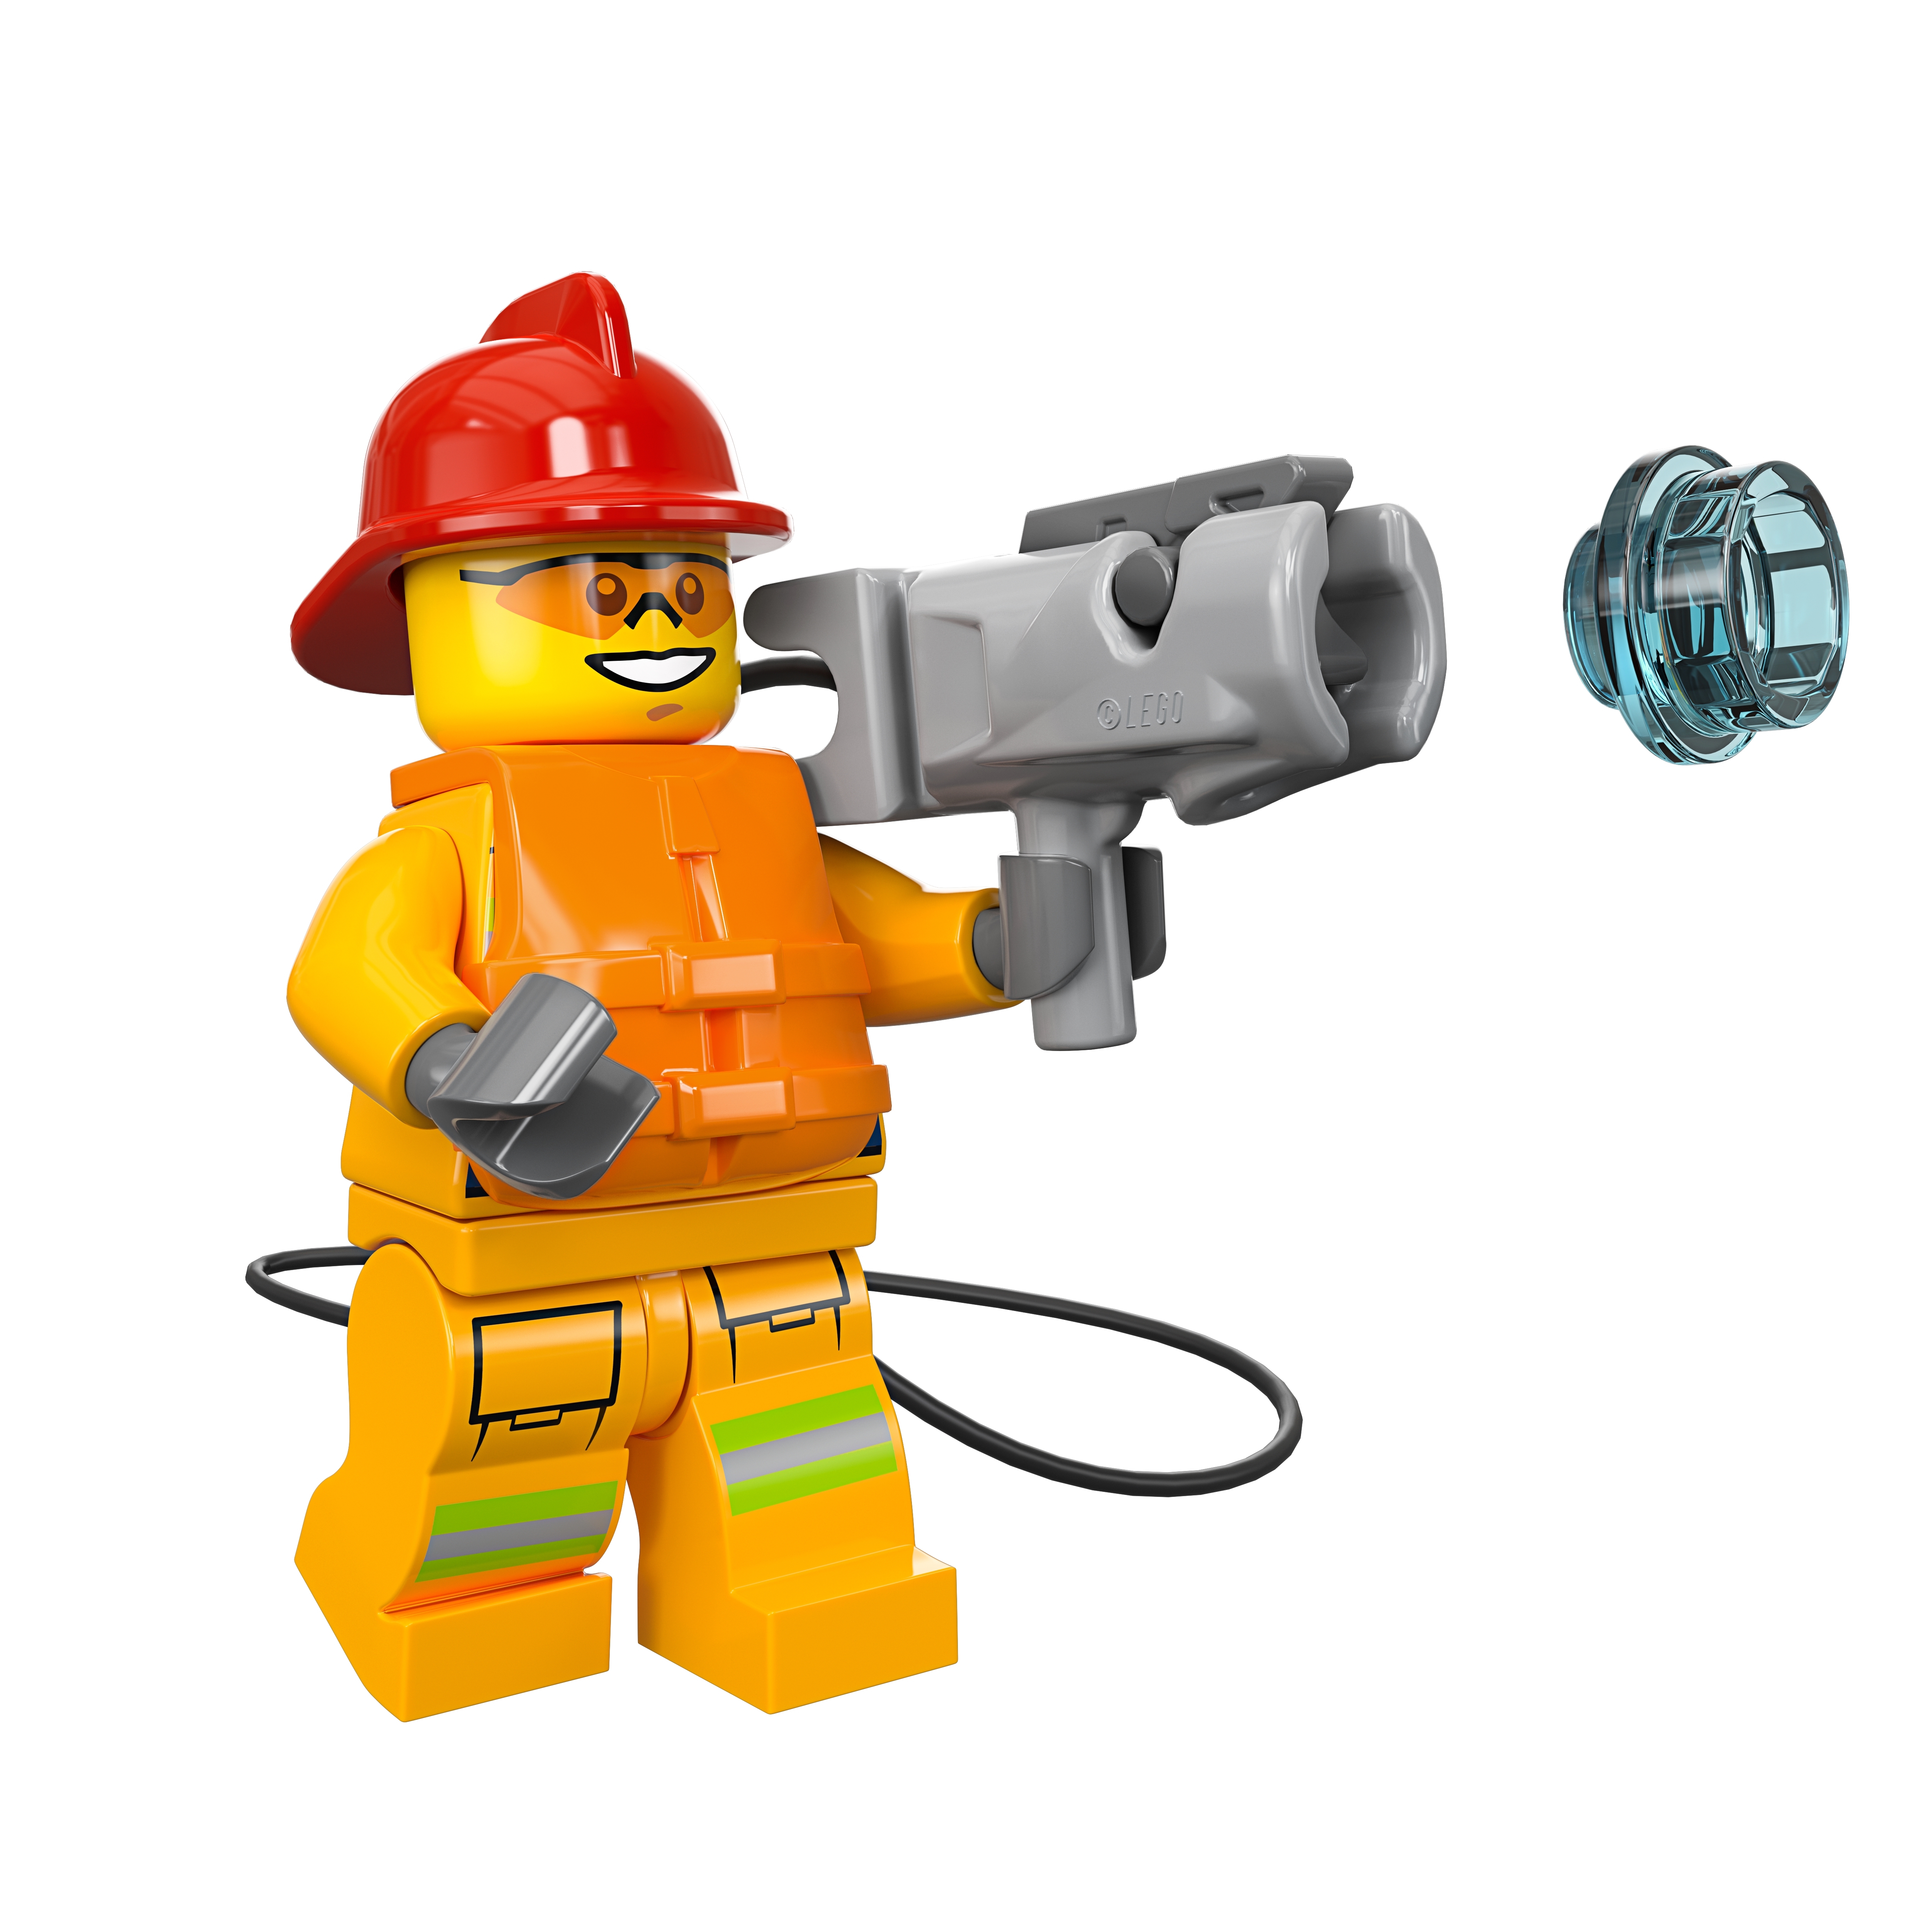 Achat Lego City · La caserne de pompiers · 60215 - 5 ans et + • Migros